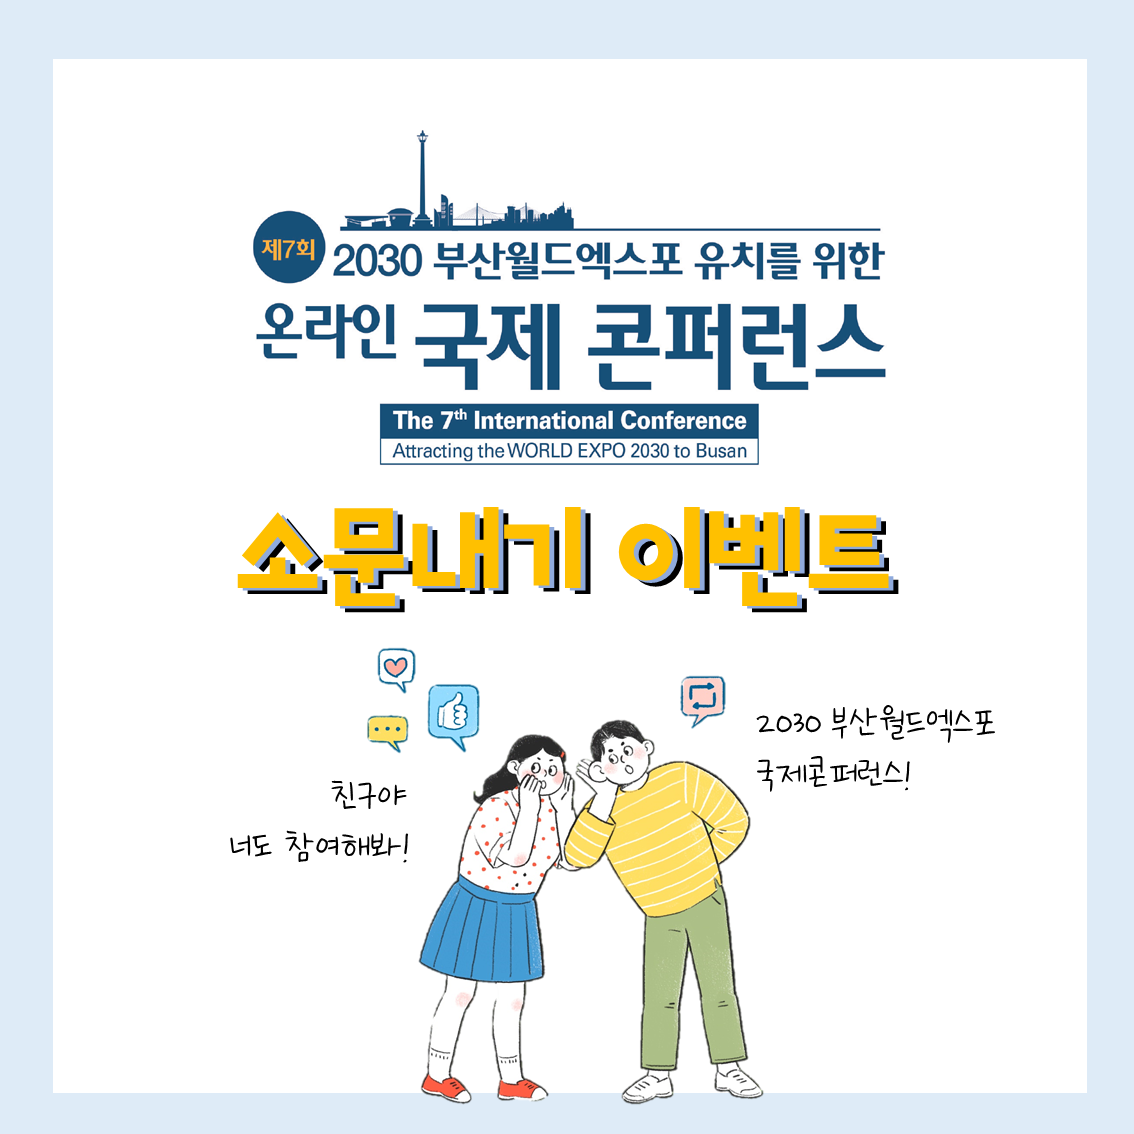 2030부산월드엑스포 유치를 위한 온라인 국제콘퍼런스 소문내기 이벤트! 1